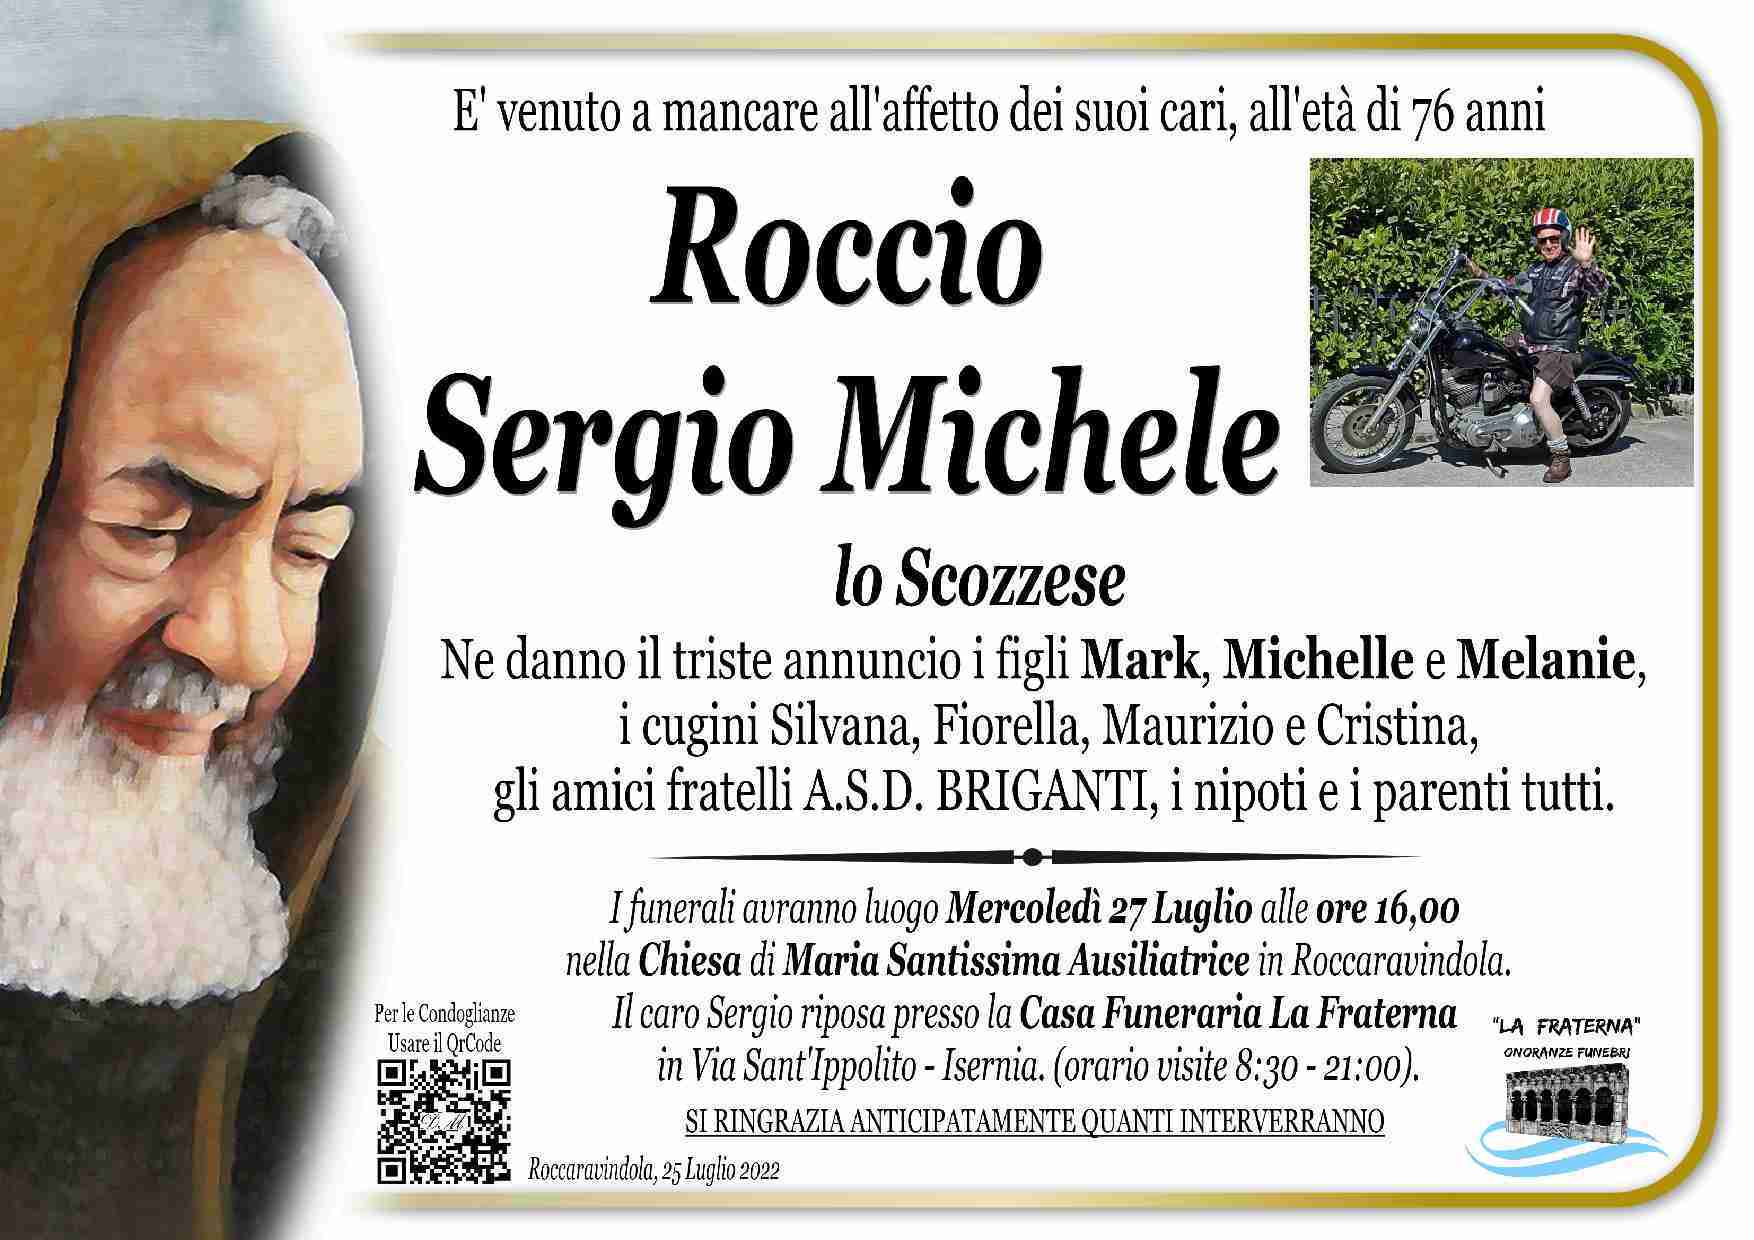 Sergio Michele Roccio